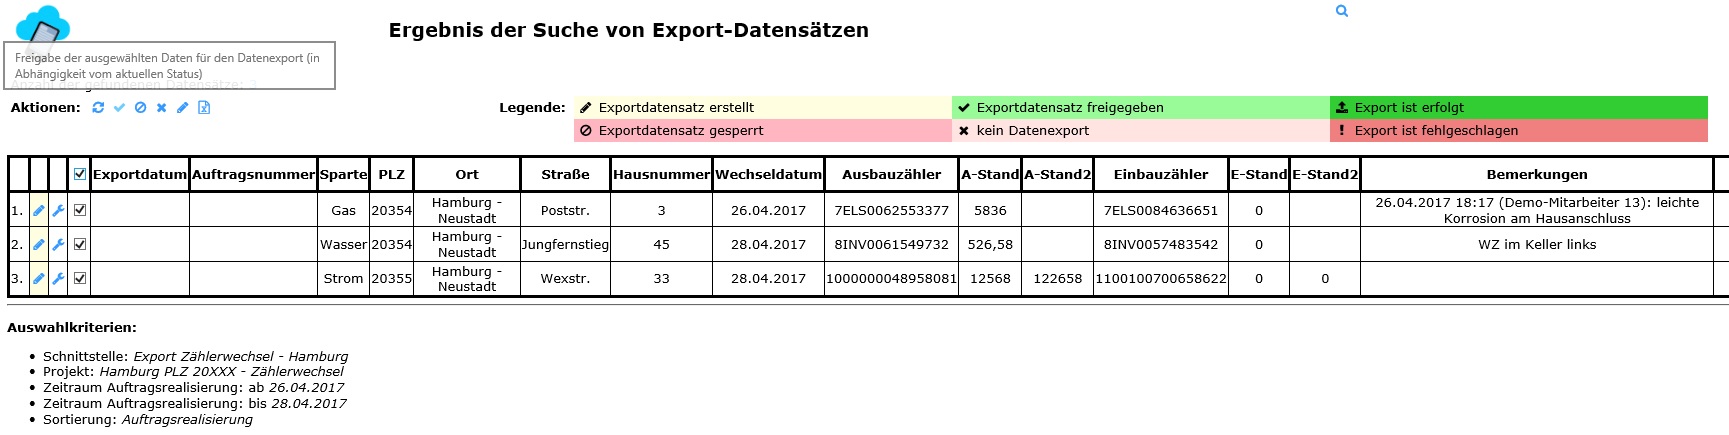 Übersicht Export-Datensätze vor Freigabe